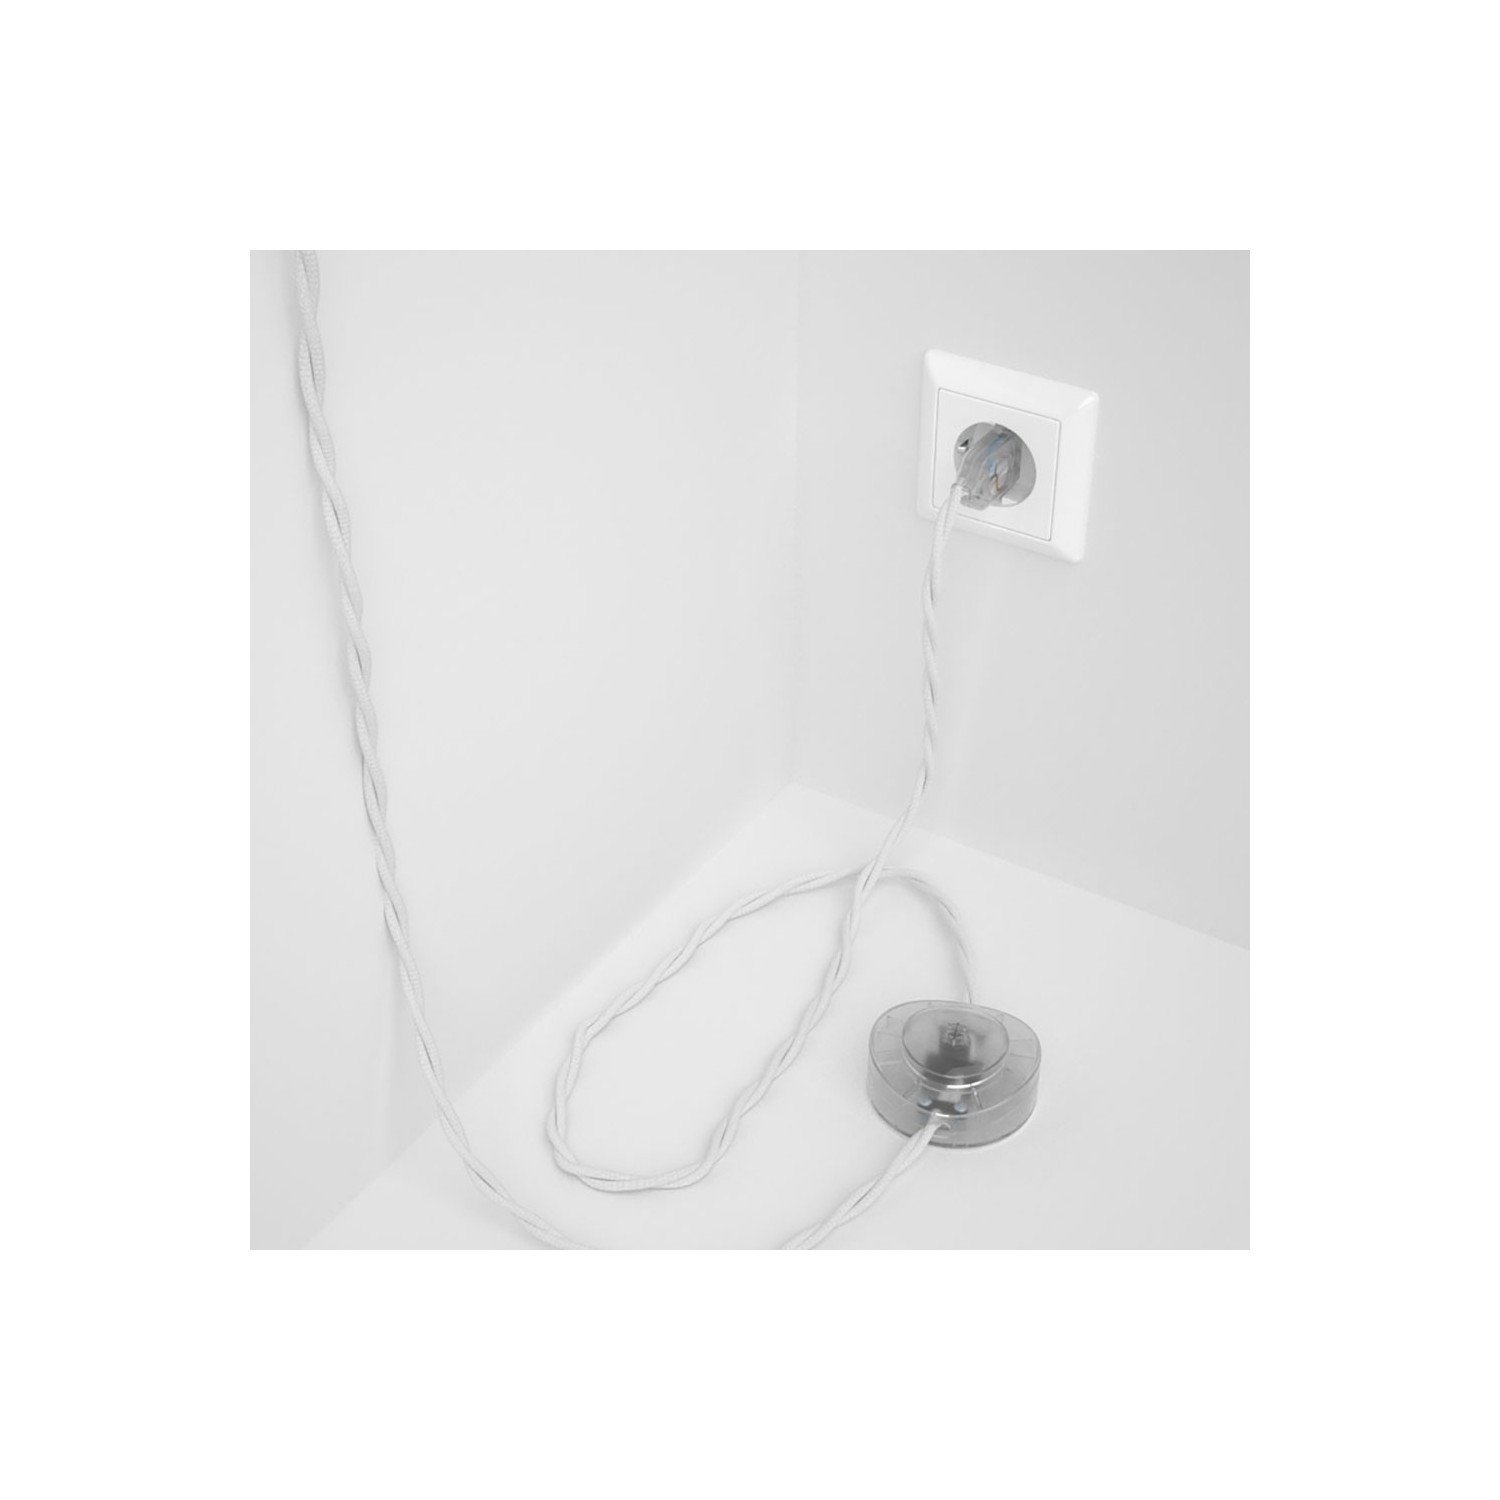 Stehleuchte Anschlussleitung TM01 Weiß Seideneffekt 3 m. Wählen Sie aus drei Farben bei Schalter und Stecke.